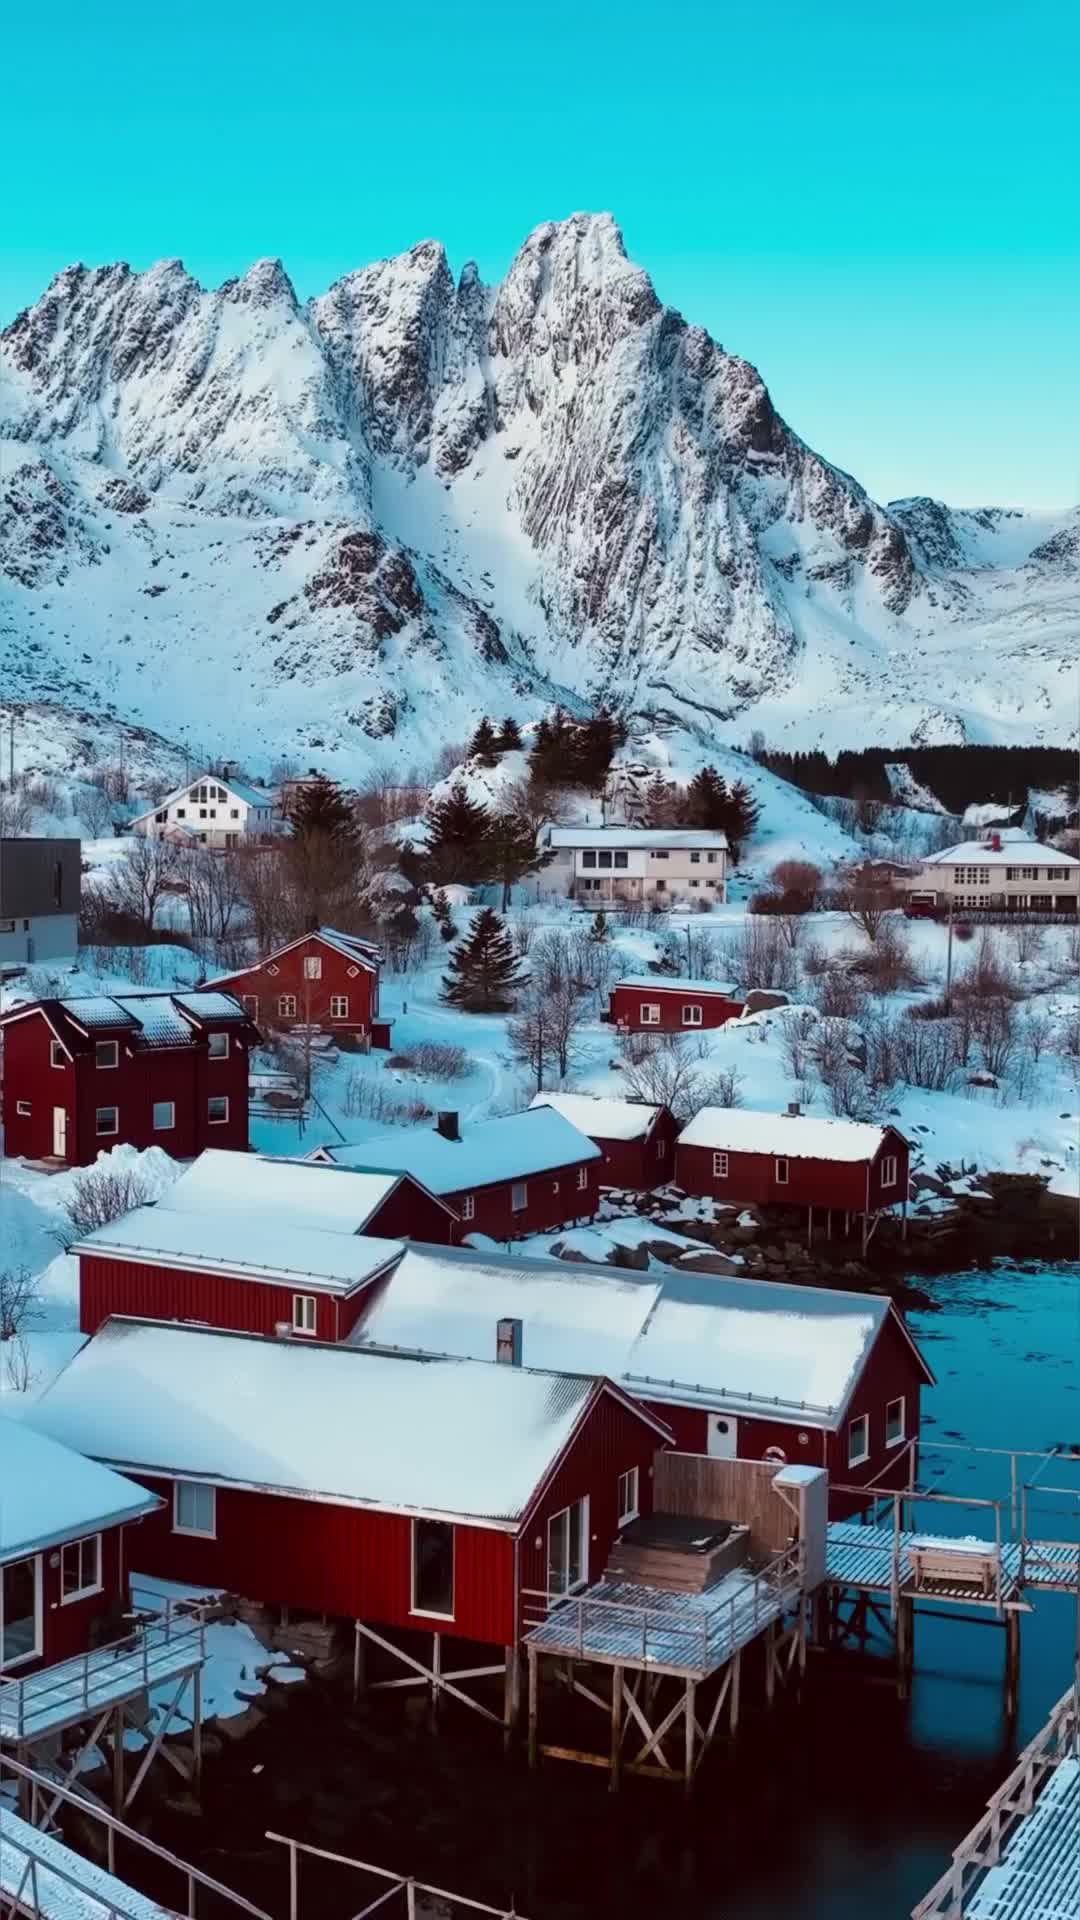 Good Morning from Lofoten Islands' Winter Wonderland